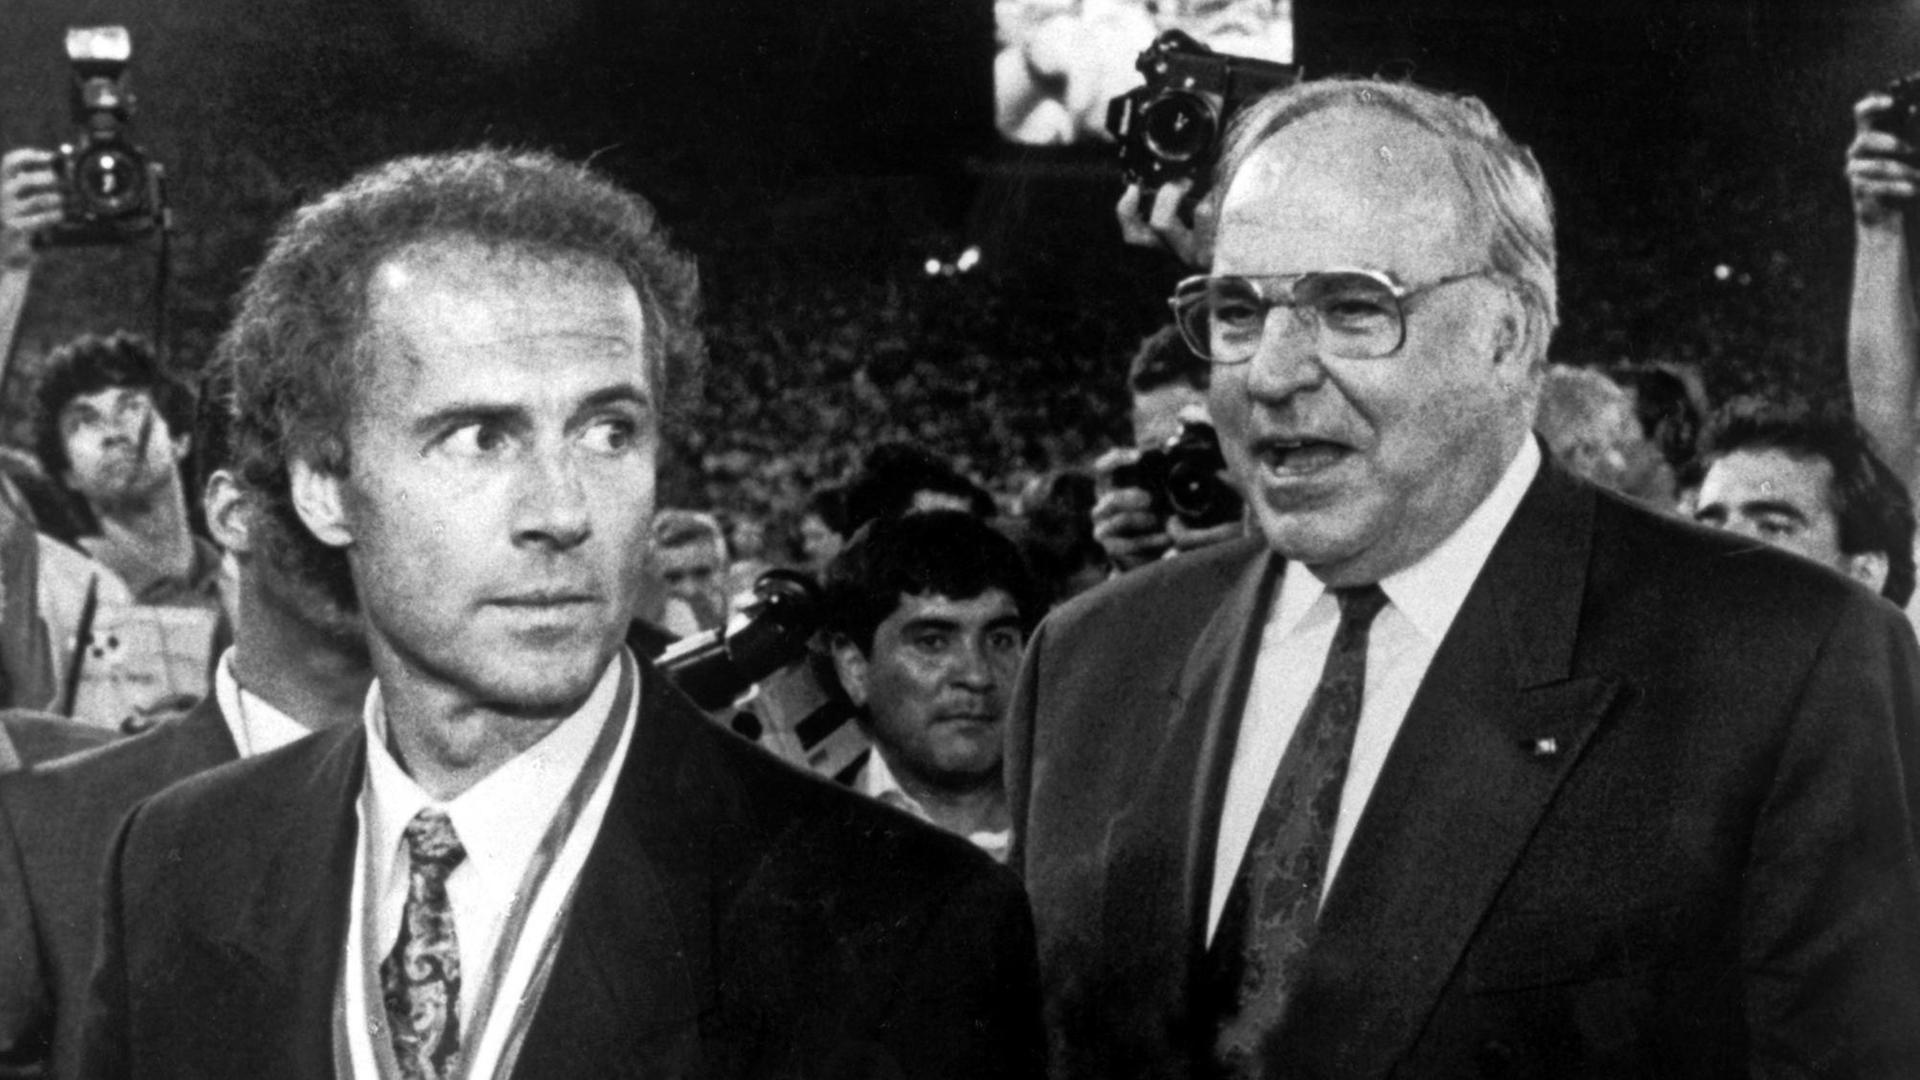 Bundeskanzler Helmut Kohl (re.) und Franz Beckenbauer bei der Siegerehrung am 08.07.1990 im Olympiastadion in Rom. Beckenbauer hatte als Teamchef die deutsche Fußballnationalmannschaft zum Weltmeistertitel geführt. Die DFB-Elf hatte das Endspiel durch ein 1:0 gegen den Titelverteidiger Argentinien gewonnen.